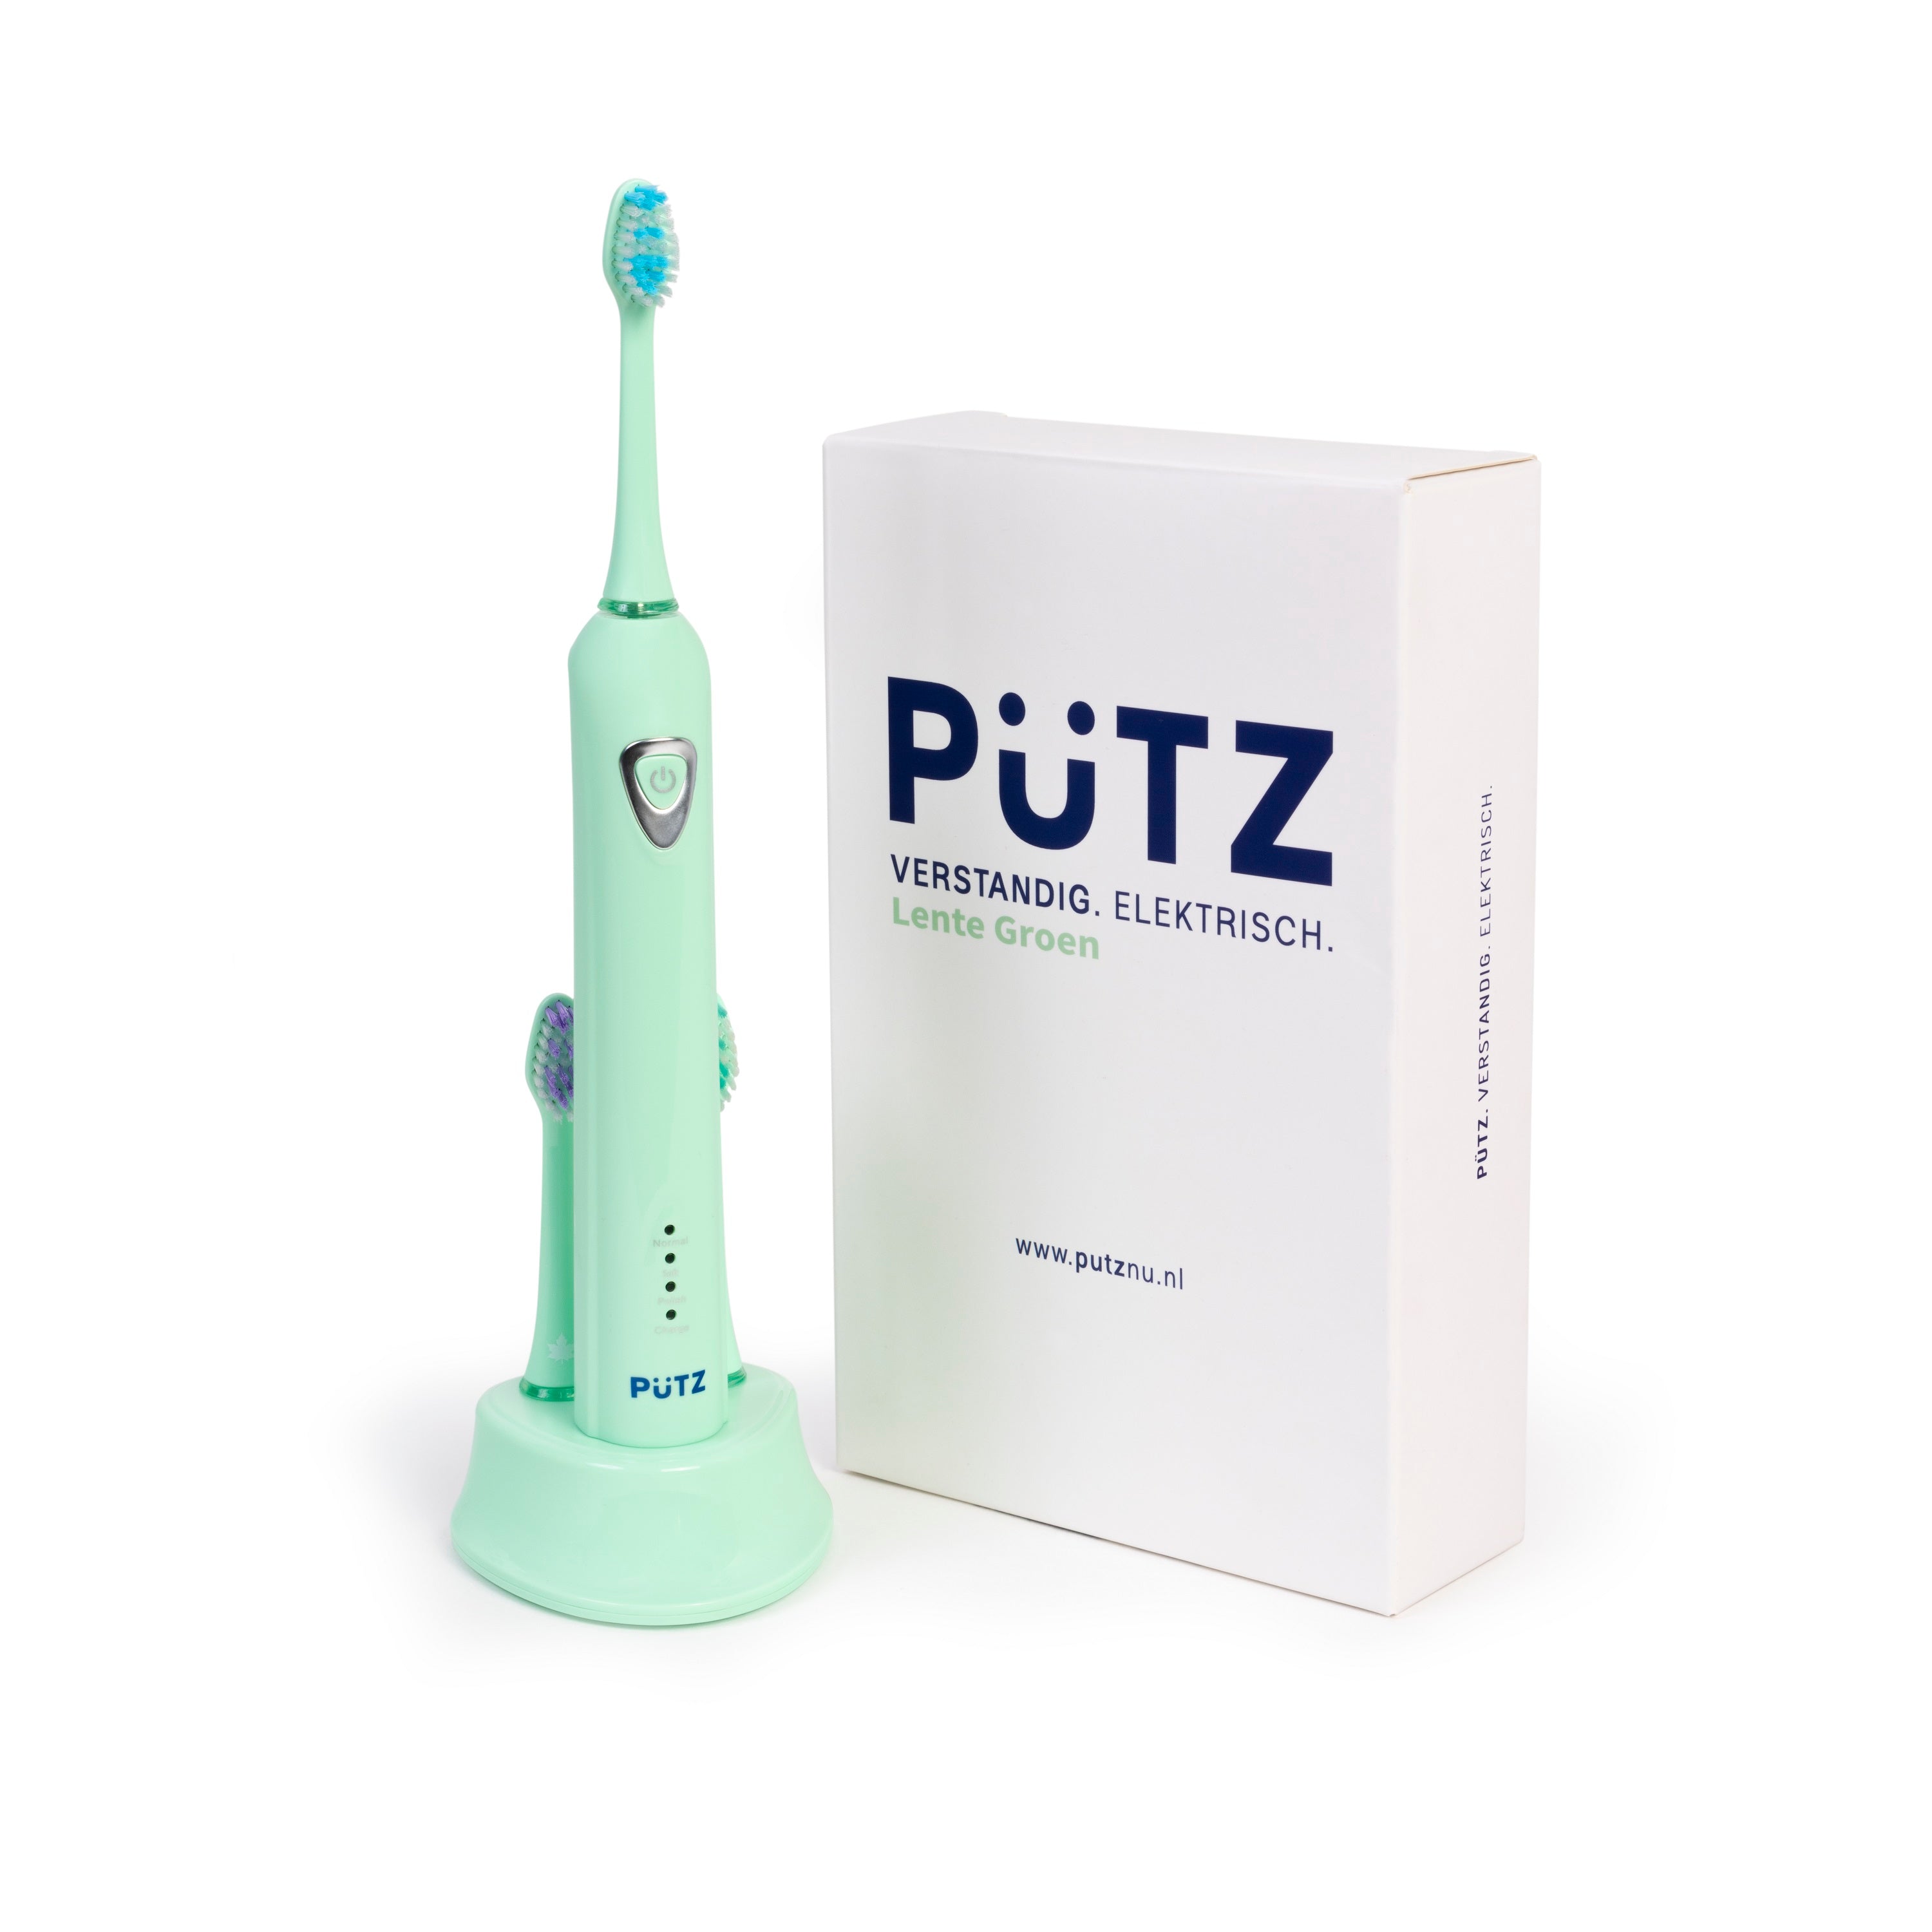 Vermaken Pijlpunt Hilarisch Pützpakket elektrische tandenborstel (2 jaar poetsen met 2 personen)